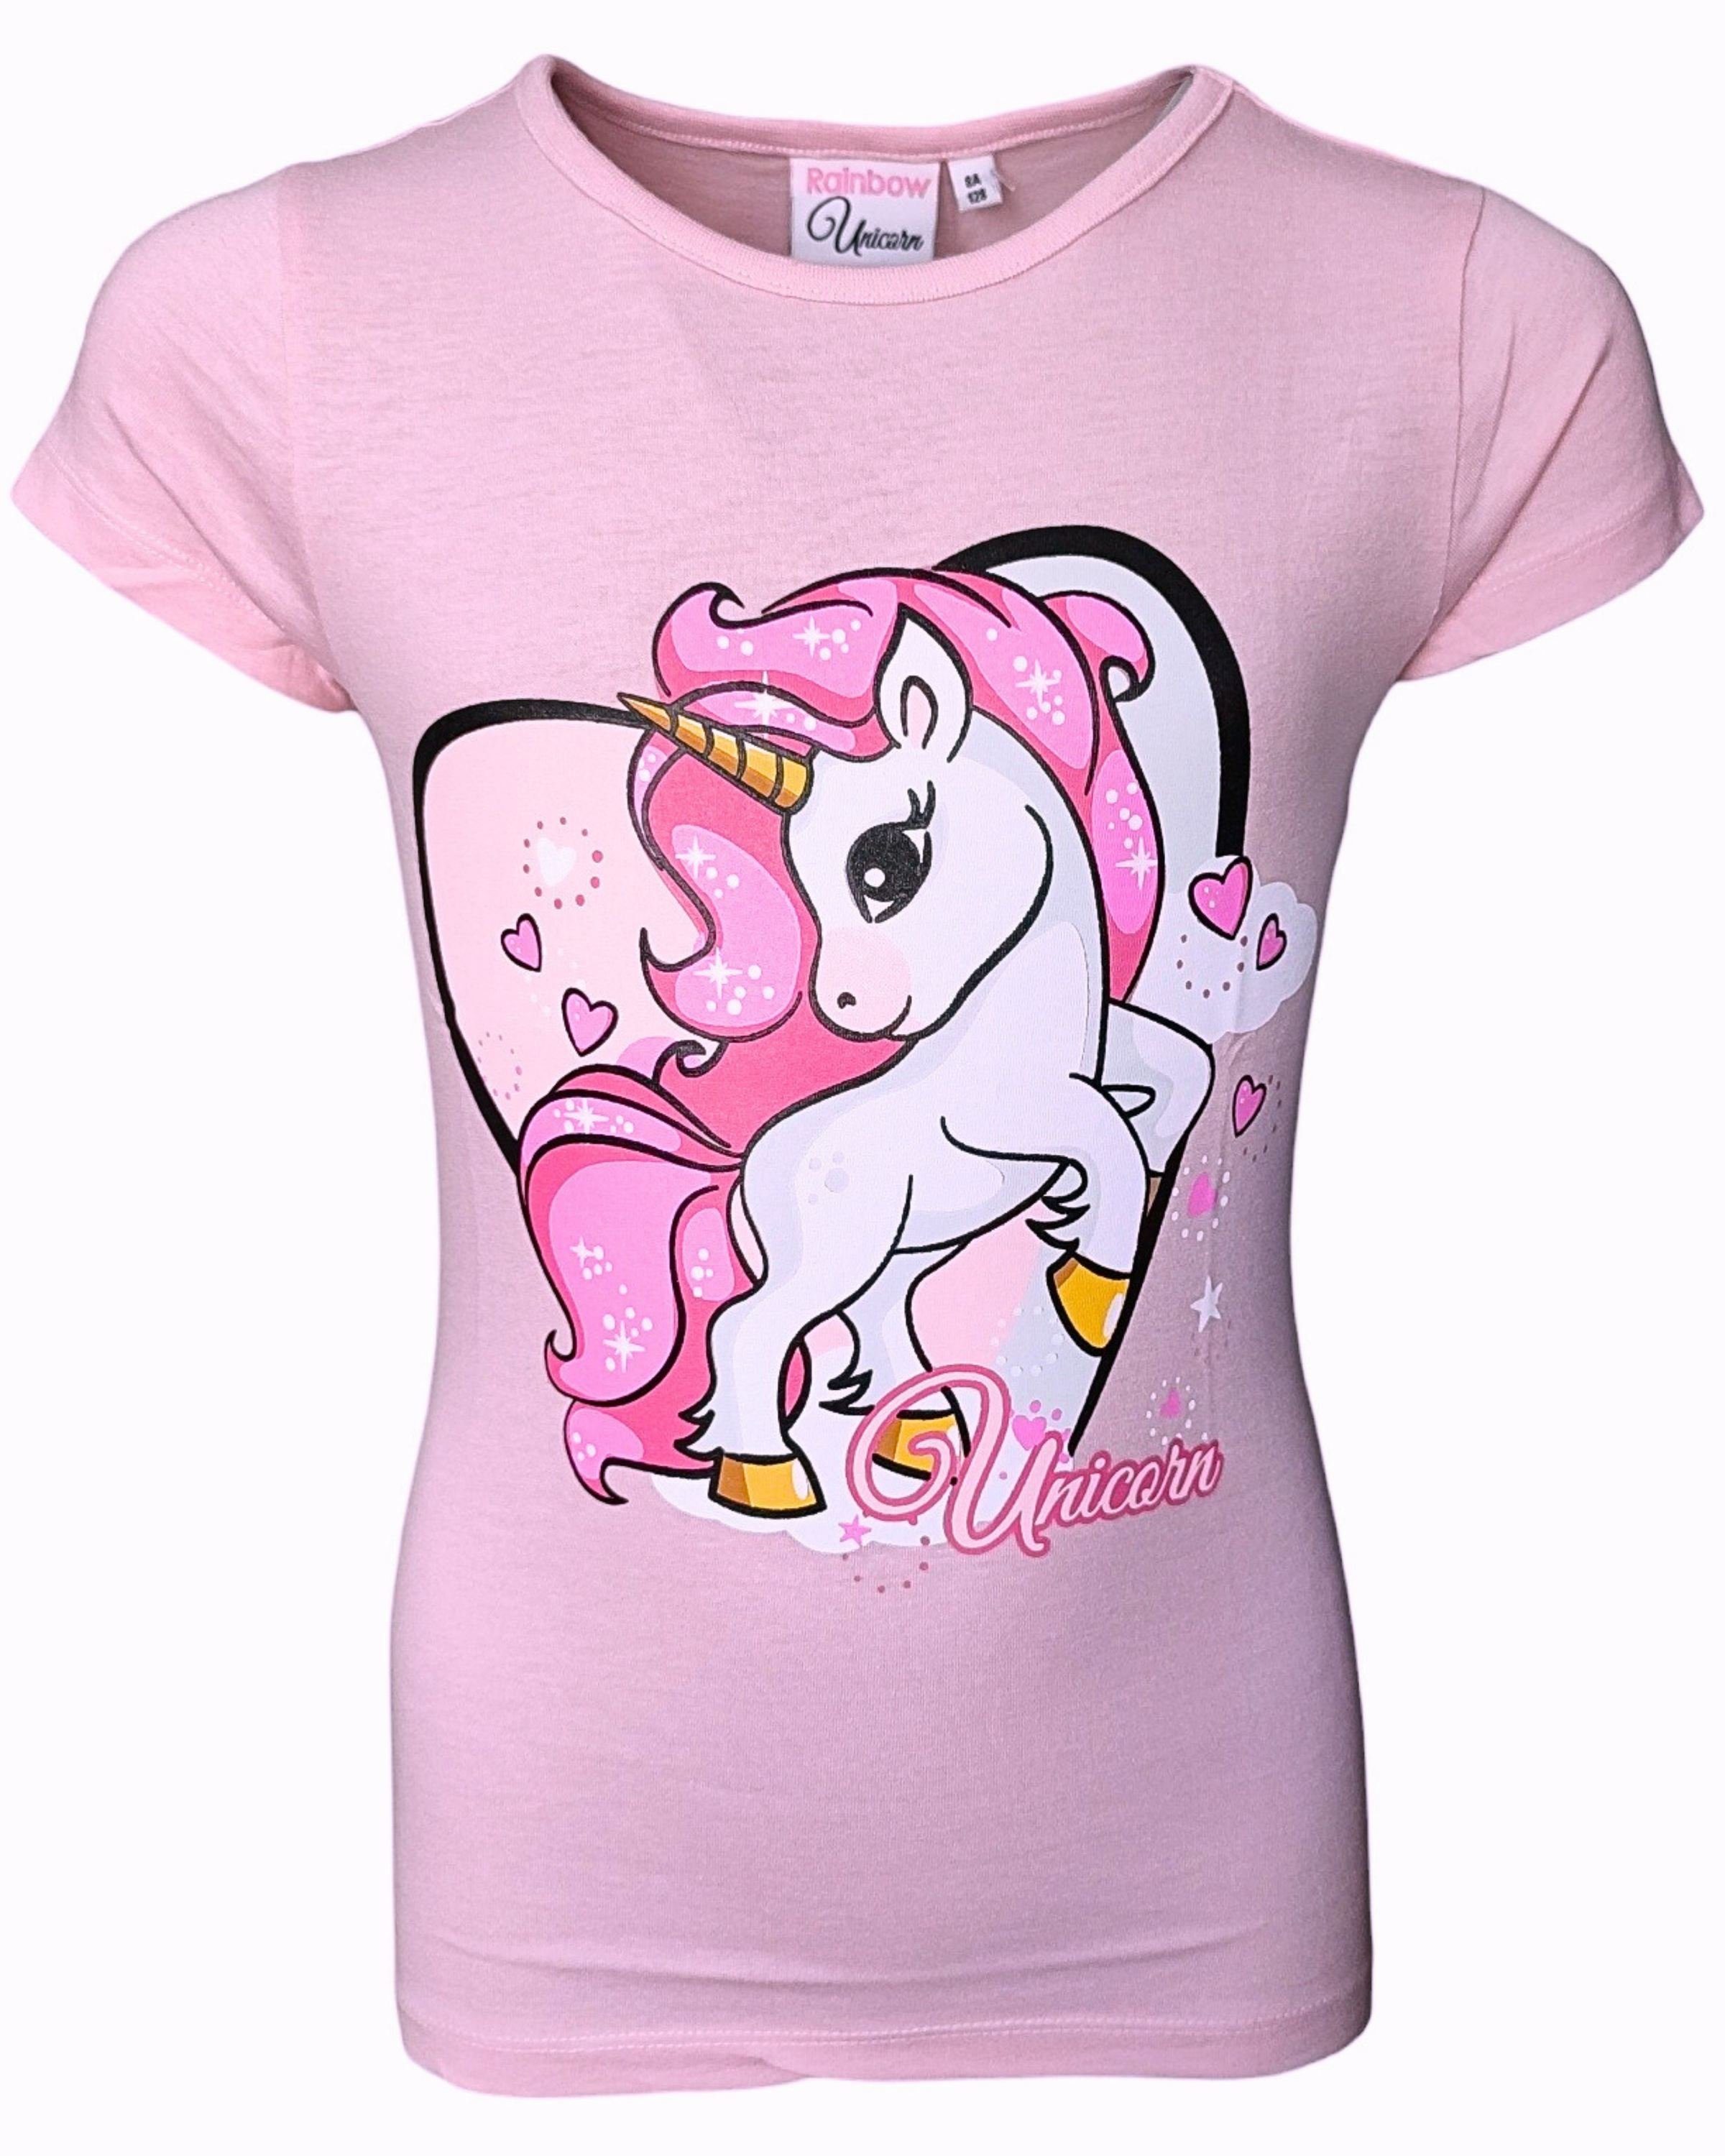 United Essentials T-Shirt Einhorn Mädchen Kurzarmshirt aus Baumwolle Gr. 98 - 128 cm Rosa